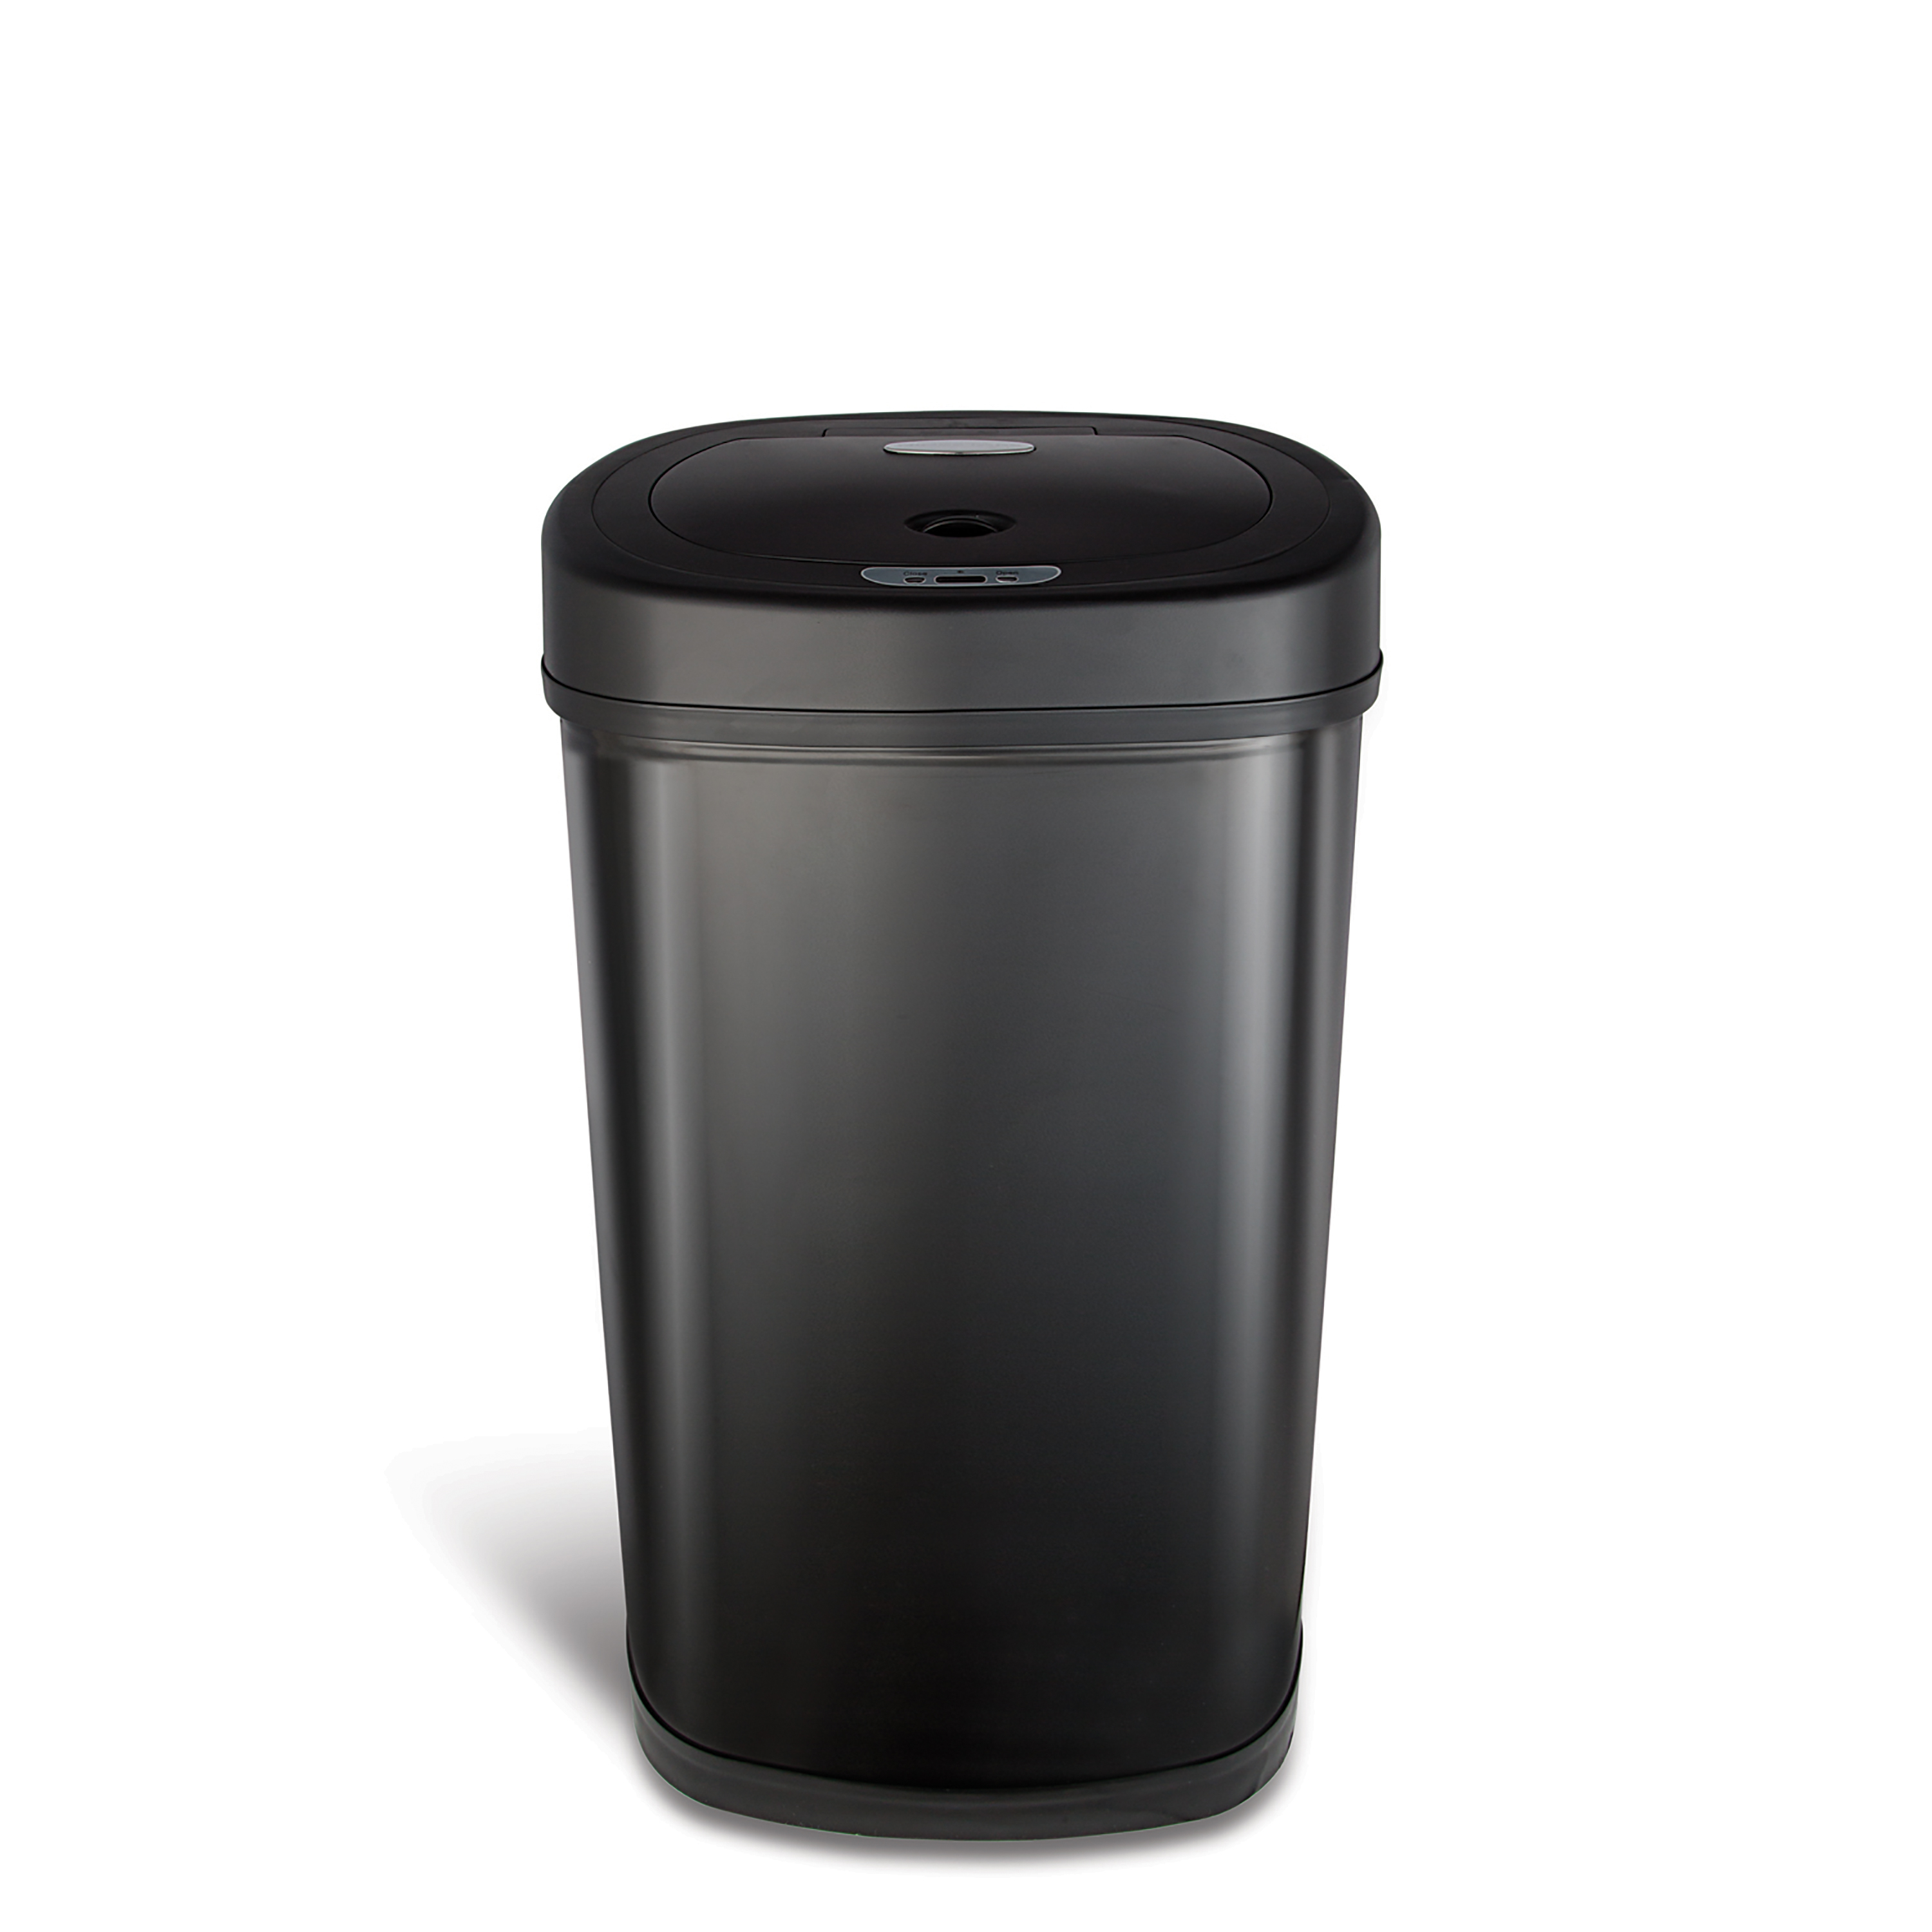 Nine Stars Motion Sensor Oval Kitchen Garbage Can, Fingerprint-Resistant Stainless Steel, 13.2 gal, Matte Black - image 1 of 9